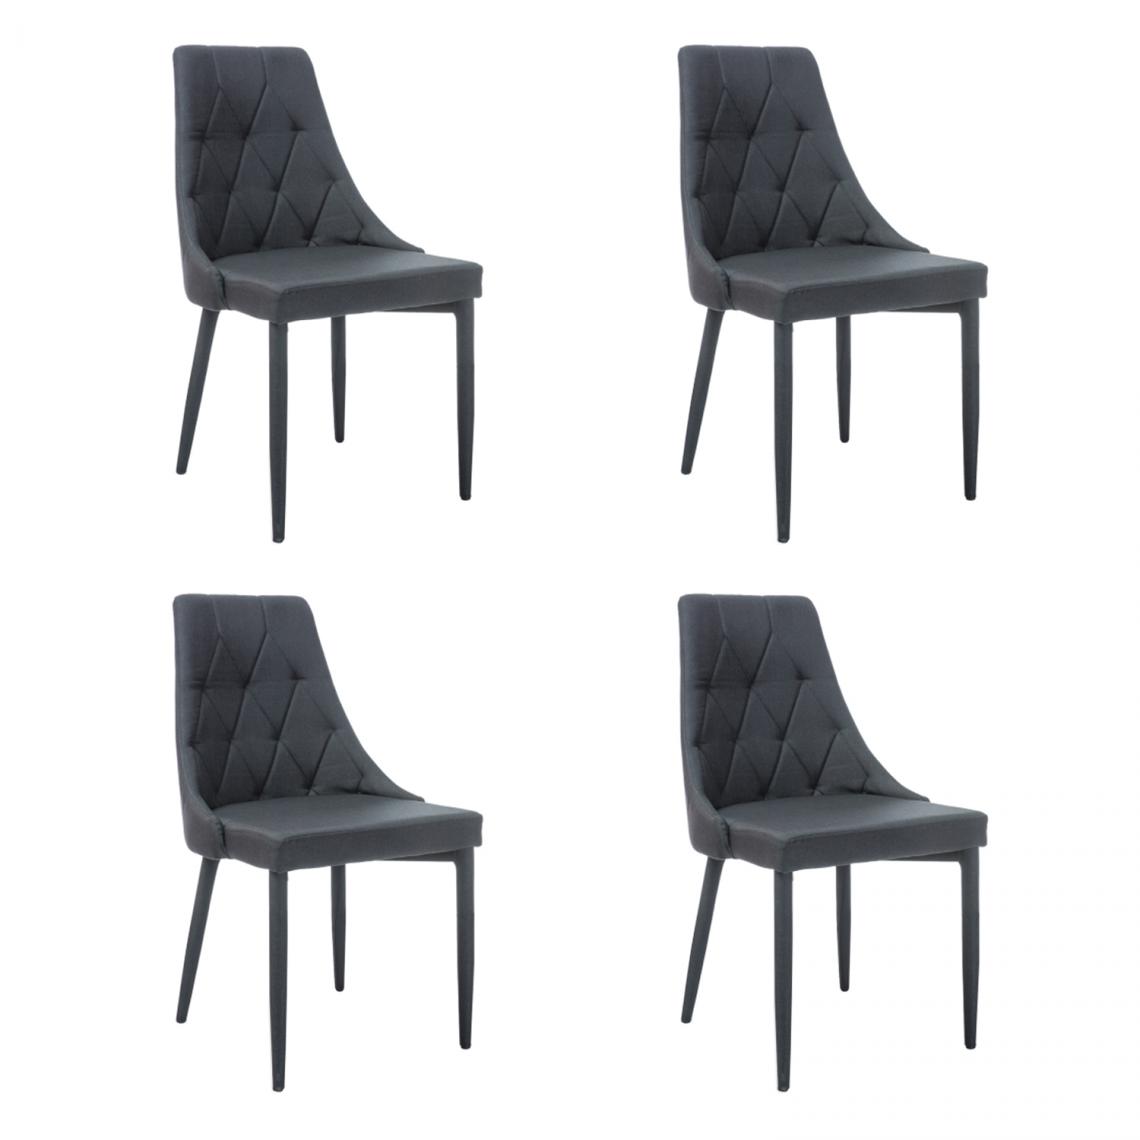 Hucoco - TRIZ - Lot de 4 chaises - Style scandinave - 88x46x46 cm - Rembourré en tissu - Structure en métal - Noir - Chaises